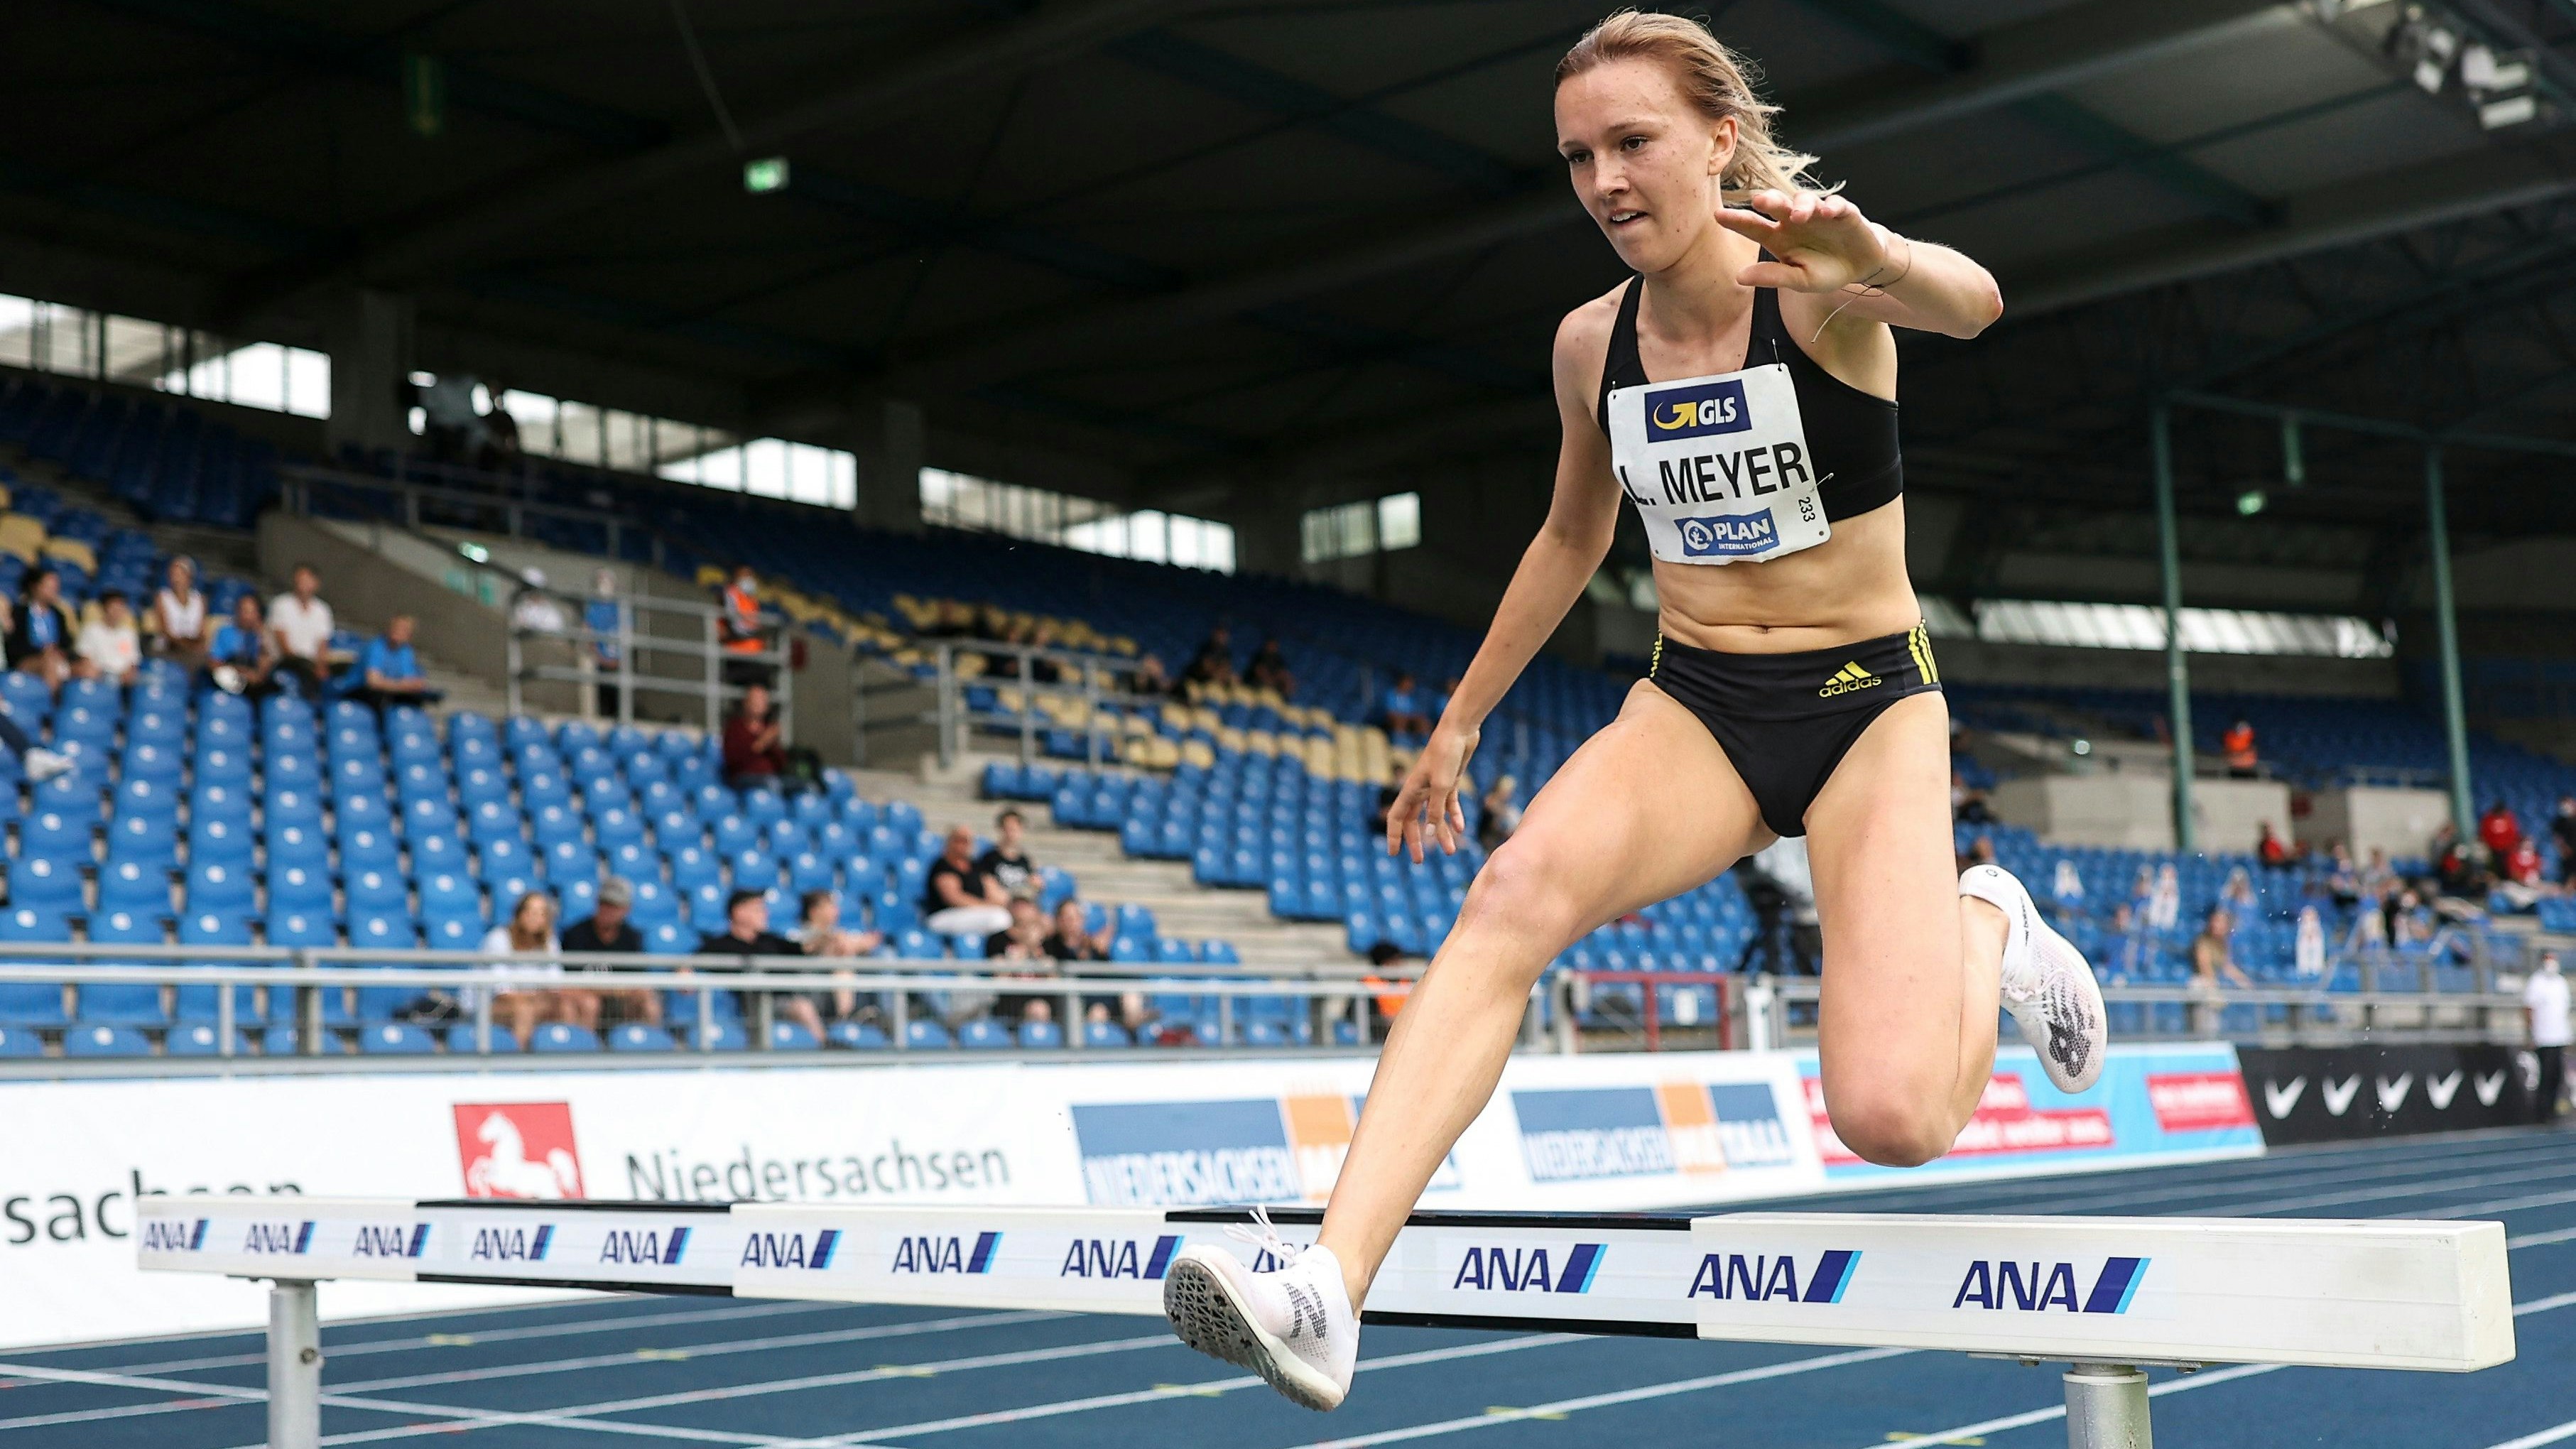 Auf dem Weg zur Silbermedaille: Lea Meyer wurde in Braunschweig Vizemeisterin über 3000 Meter Hindernis. Foto: Beautiful Sports/Axel Kohring